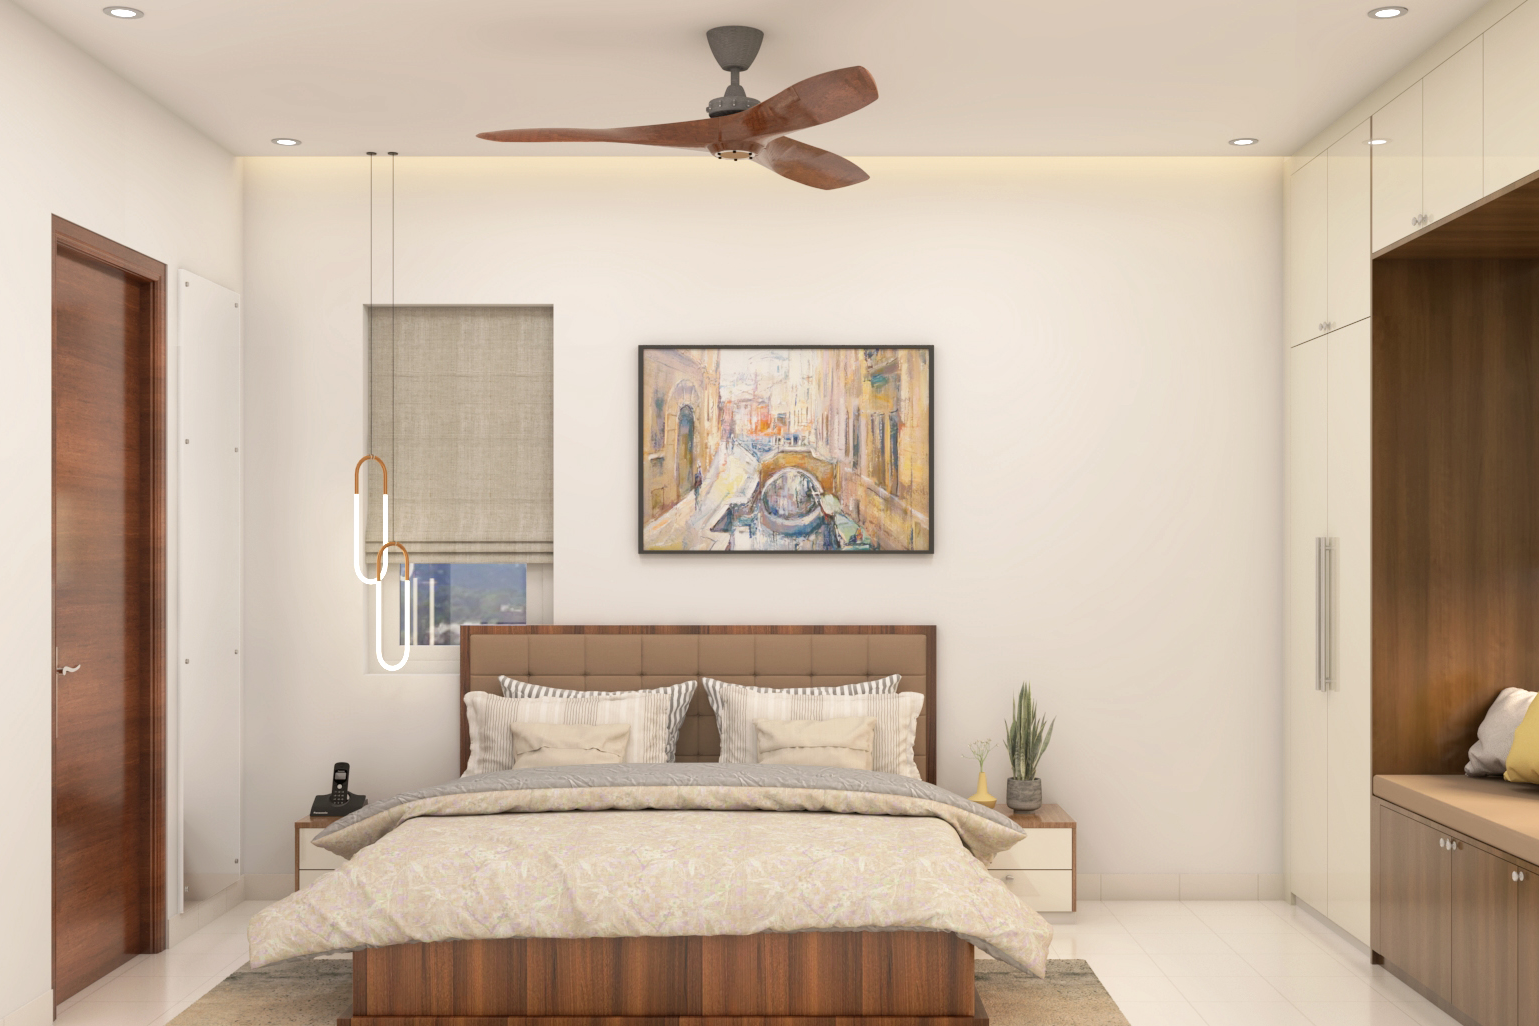 Contemporary Master Bedroom Design With Wardrobe